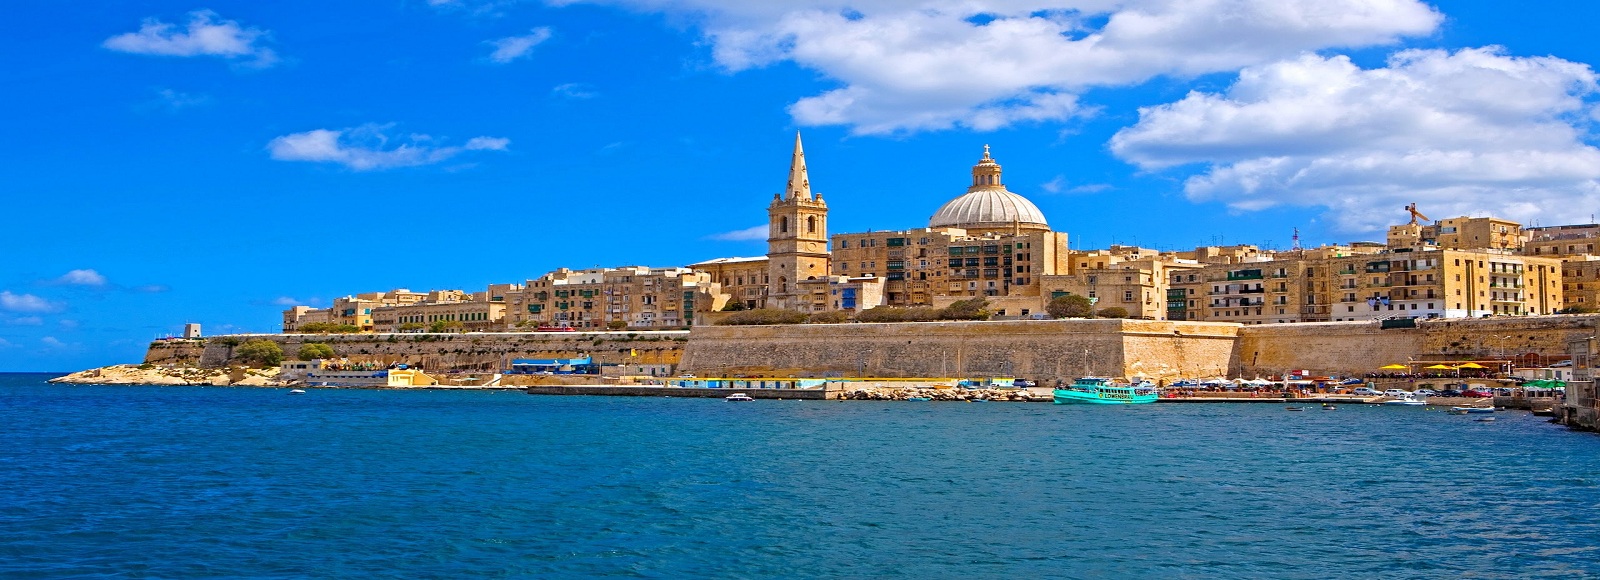 Ofertas de Traslados en Malta. Traslados económicos en Malta 